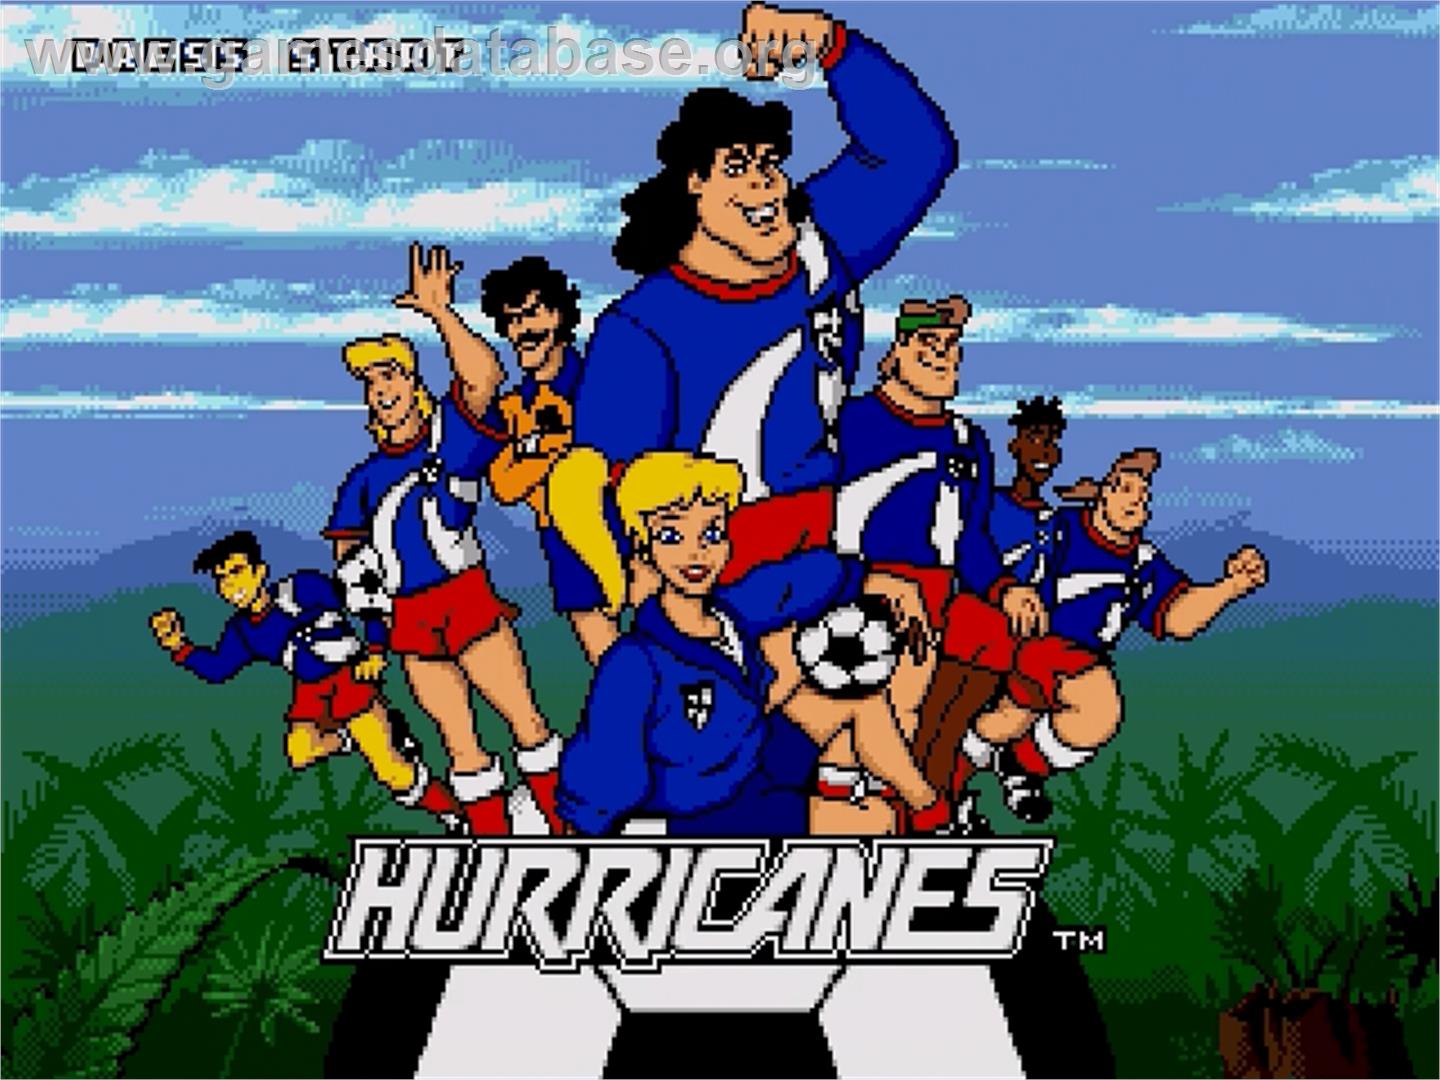 Hurricanes, The - Sega Genesis - Artwork - Title Screen